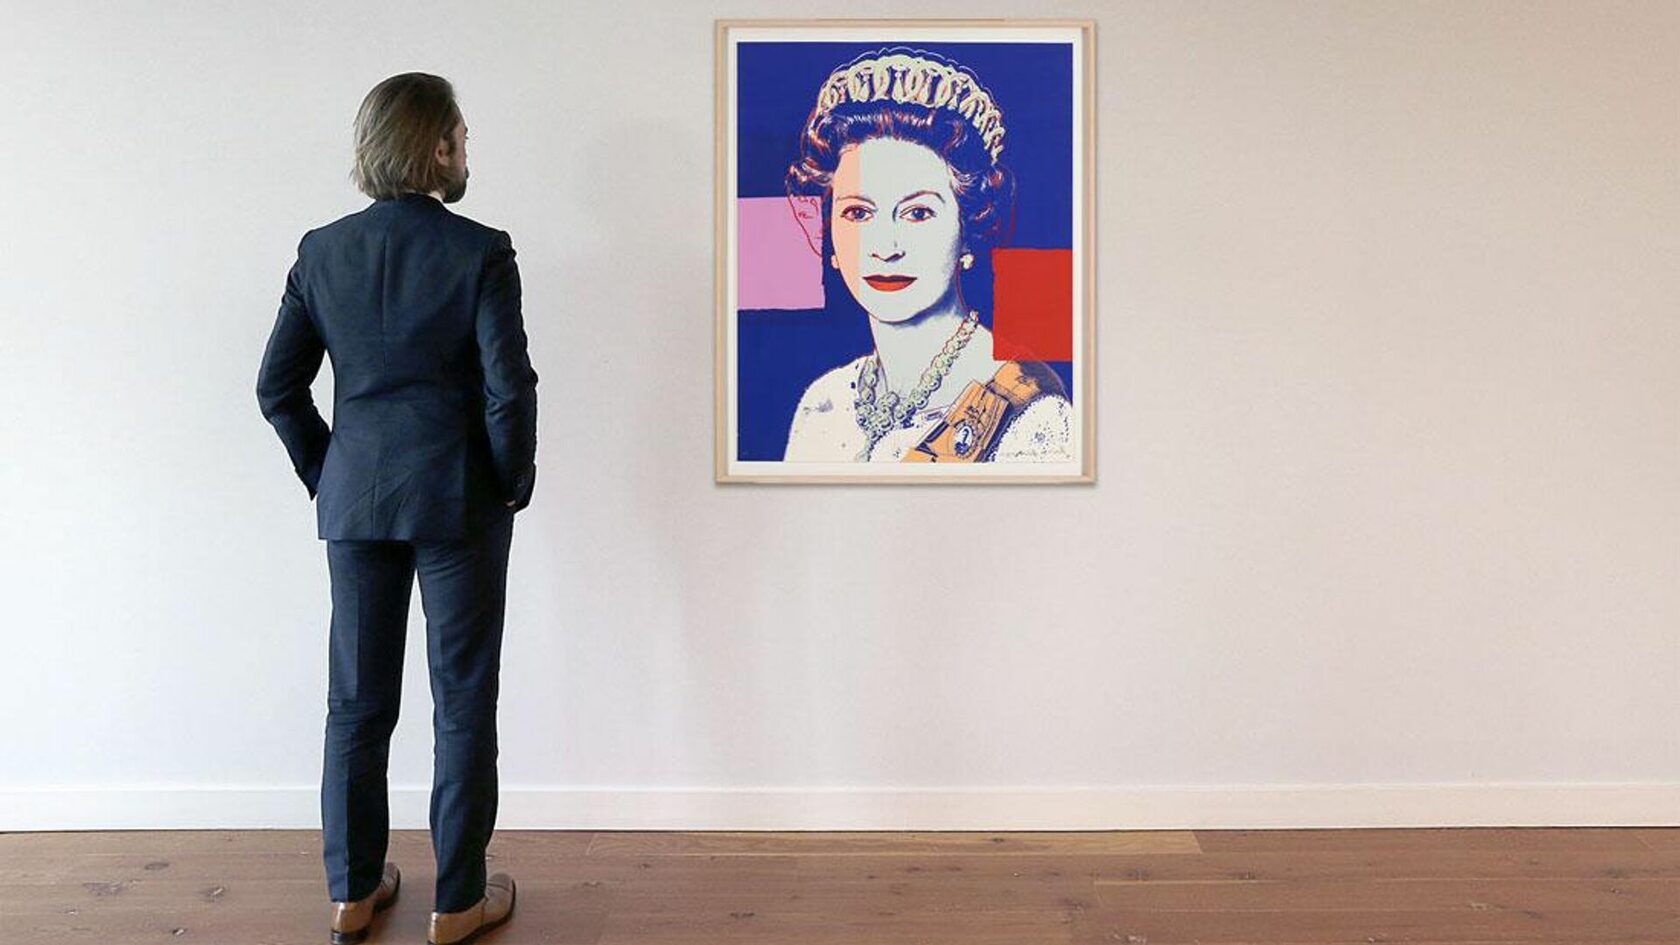 королева Елизаветы II, королева Англии, Энди Уорхол, картина Энди Уорхола